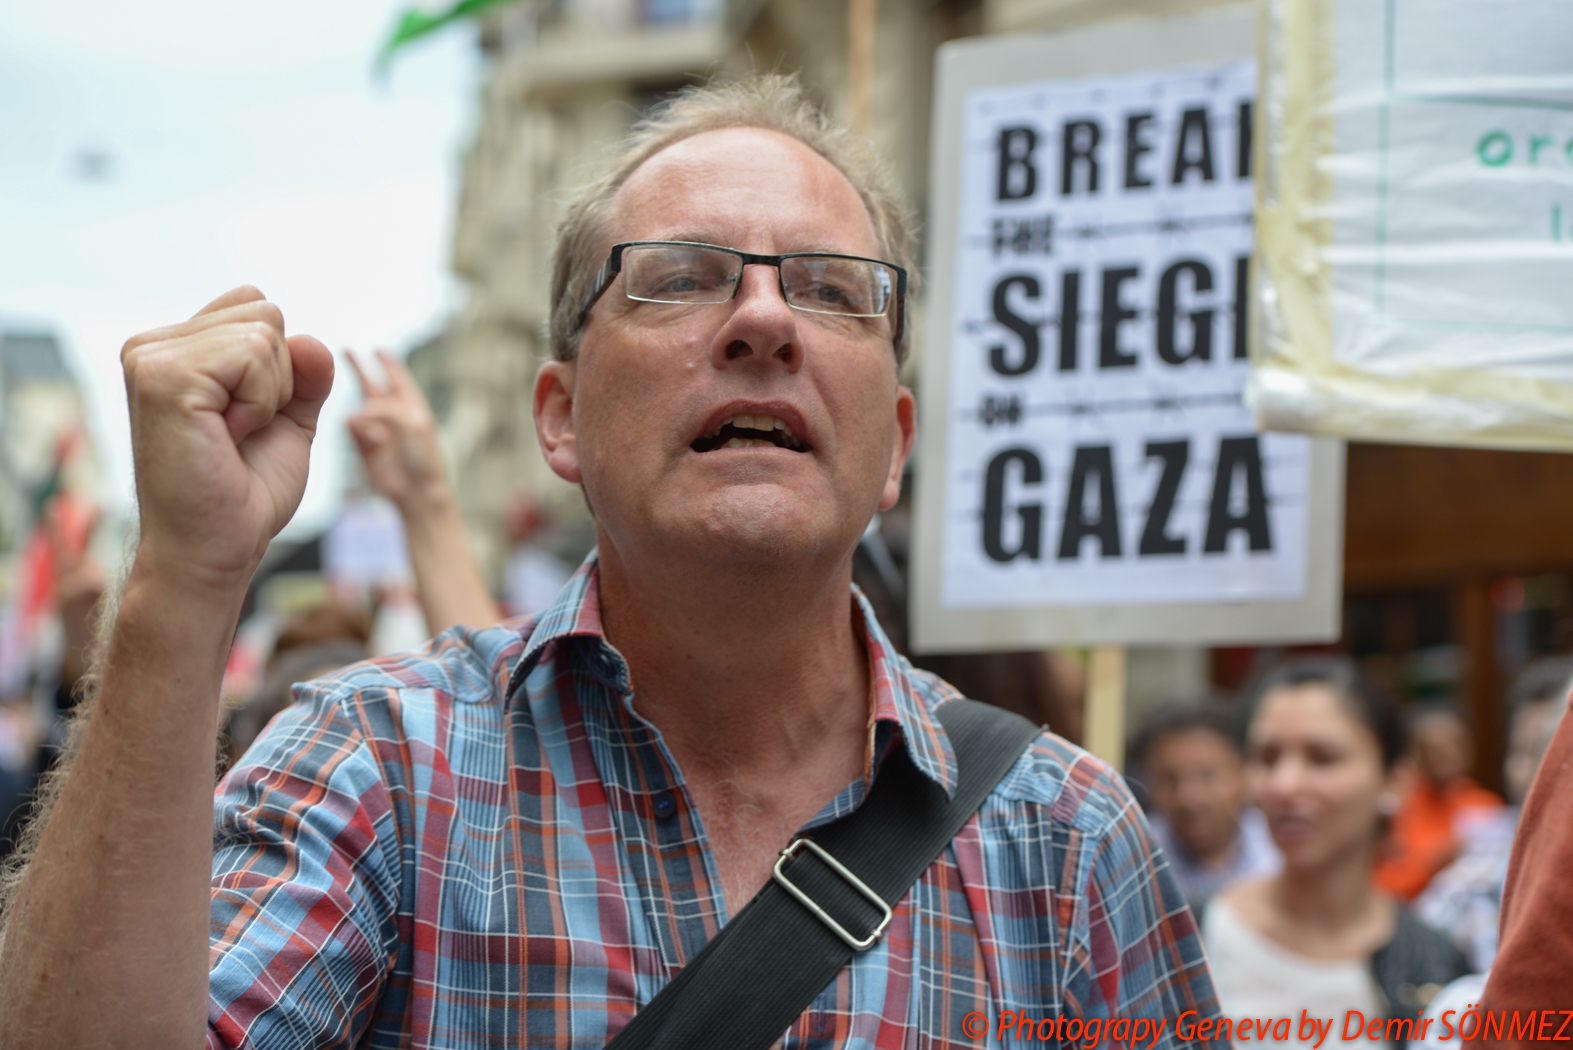 Grande manifestation pacifique à Genève en soutien au peuple Palestinien-6617.jpg